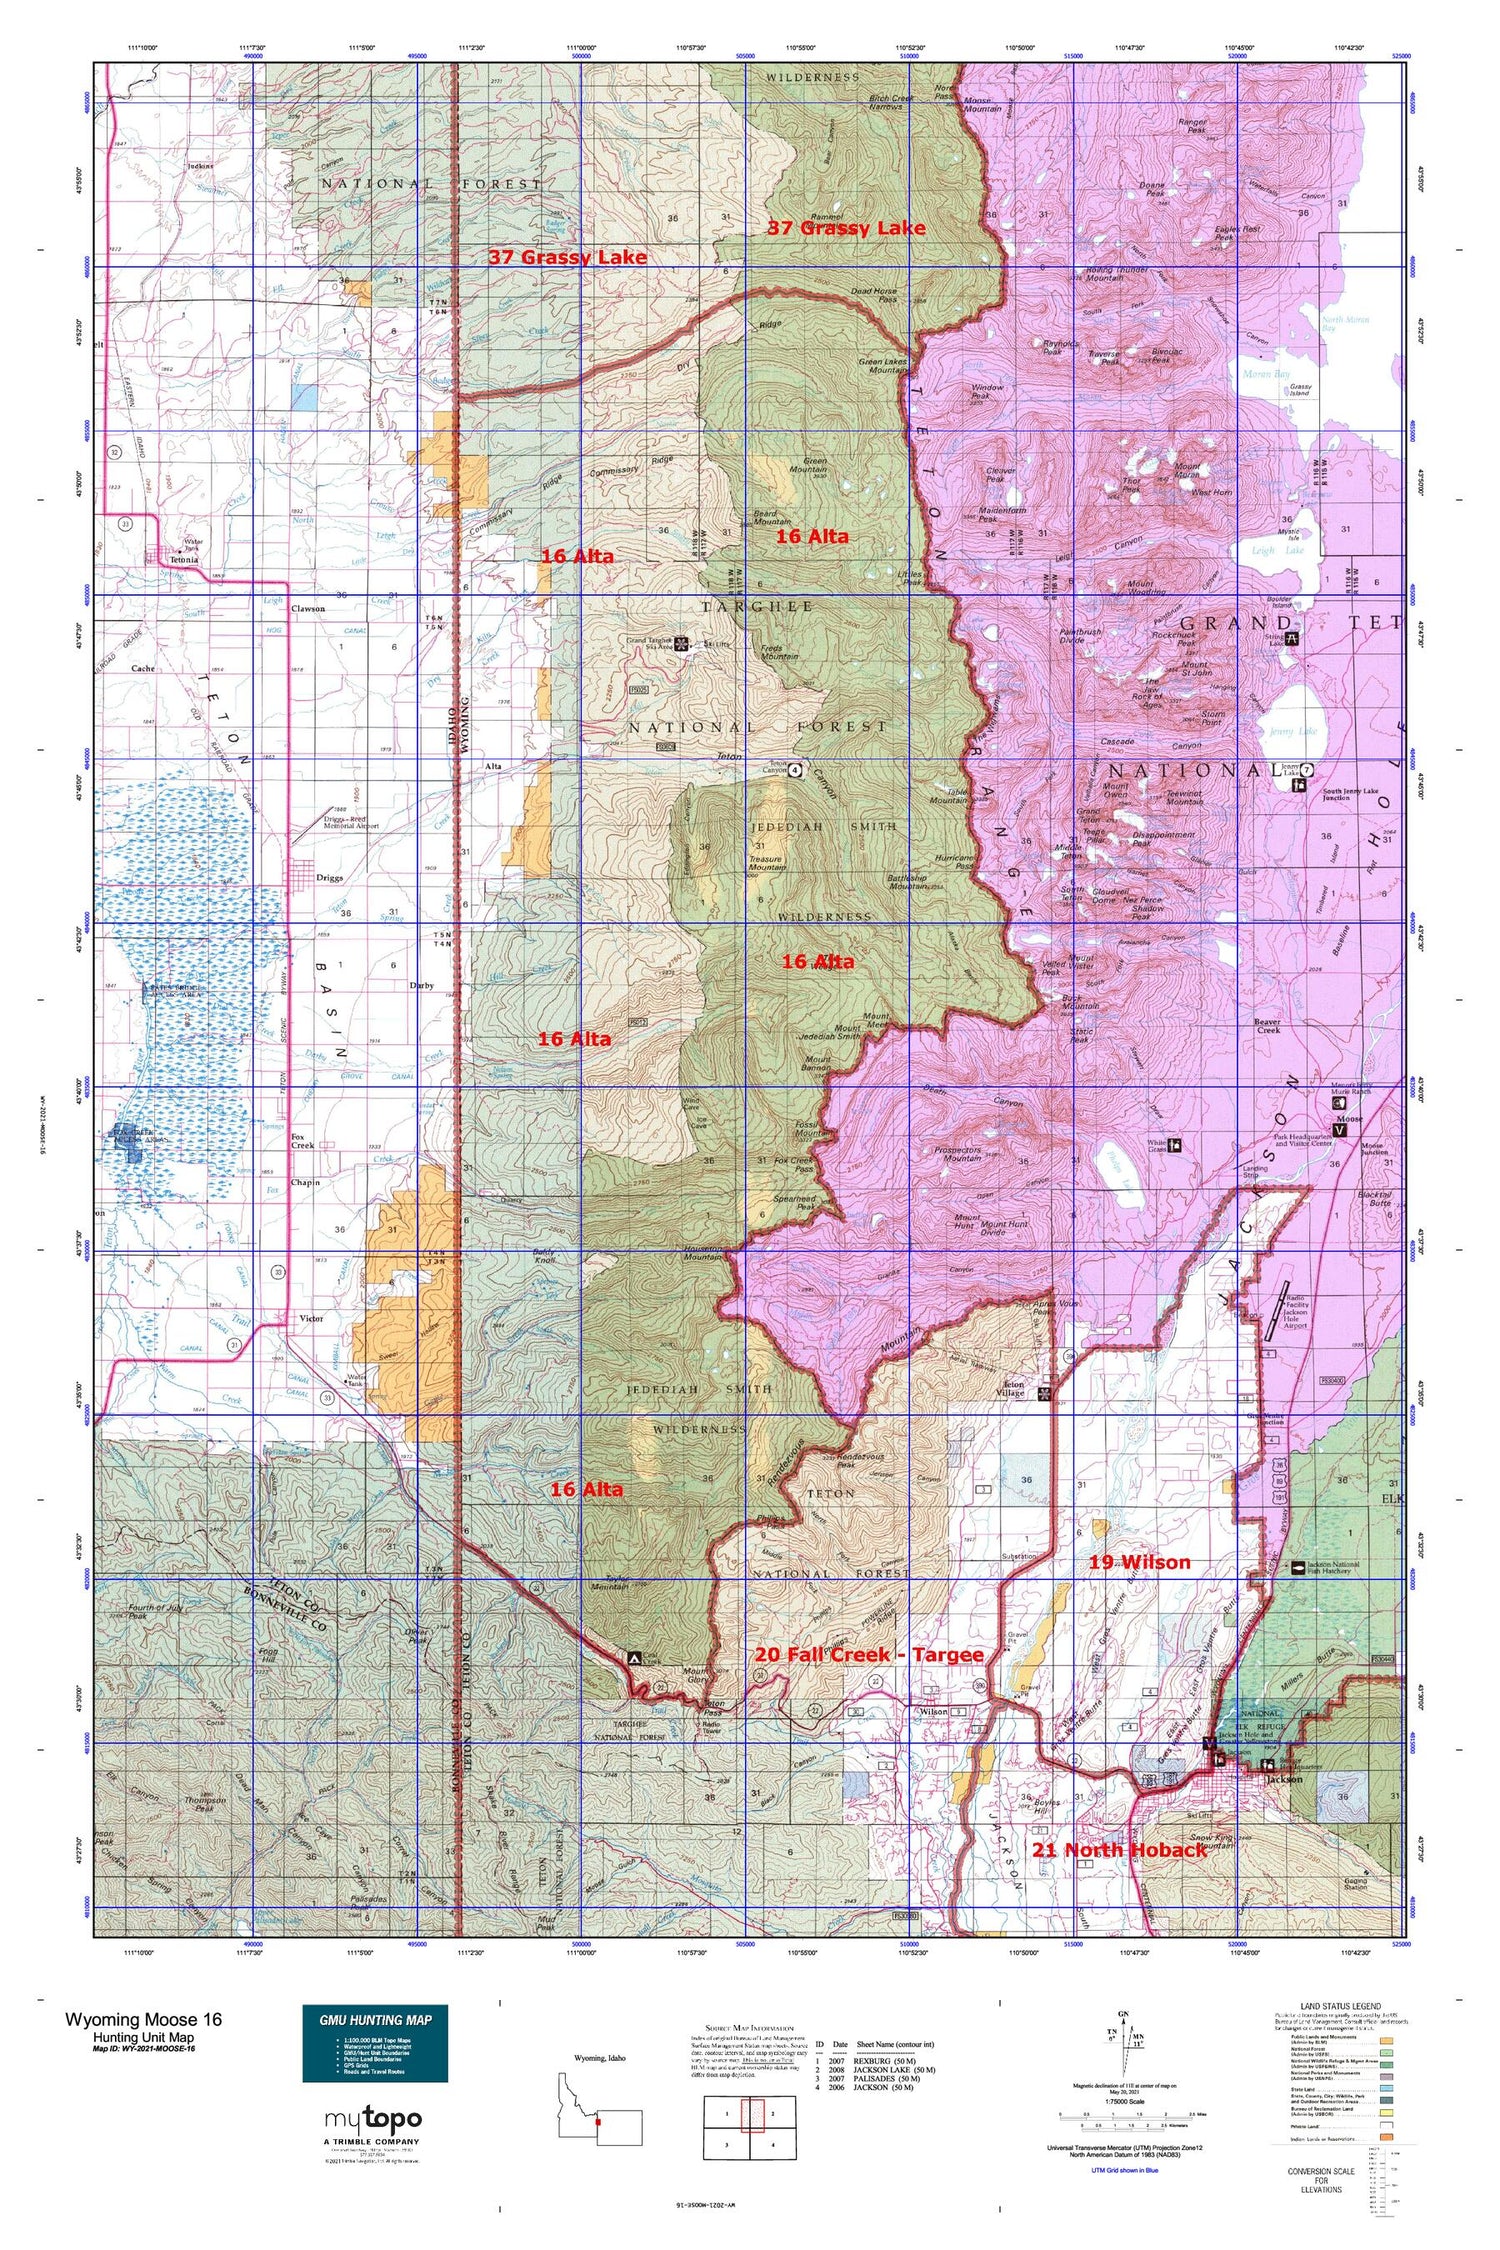 Wyoming Moose 16 Map Image